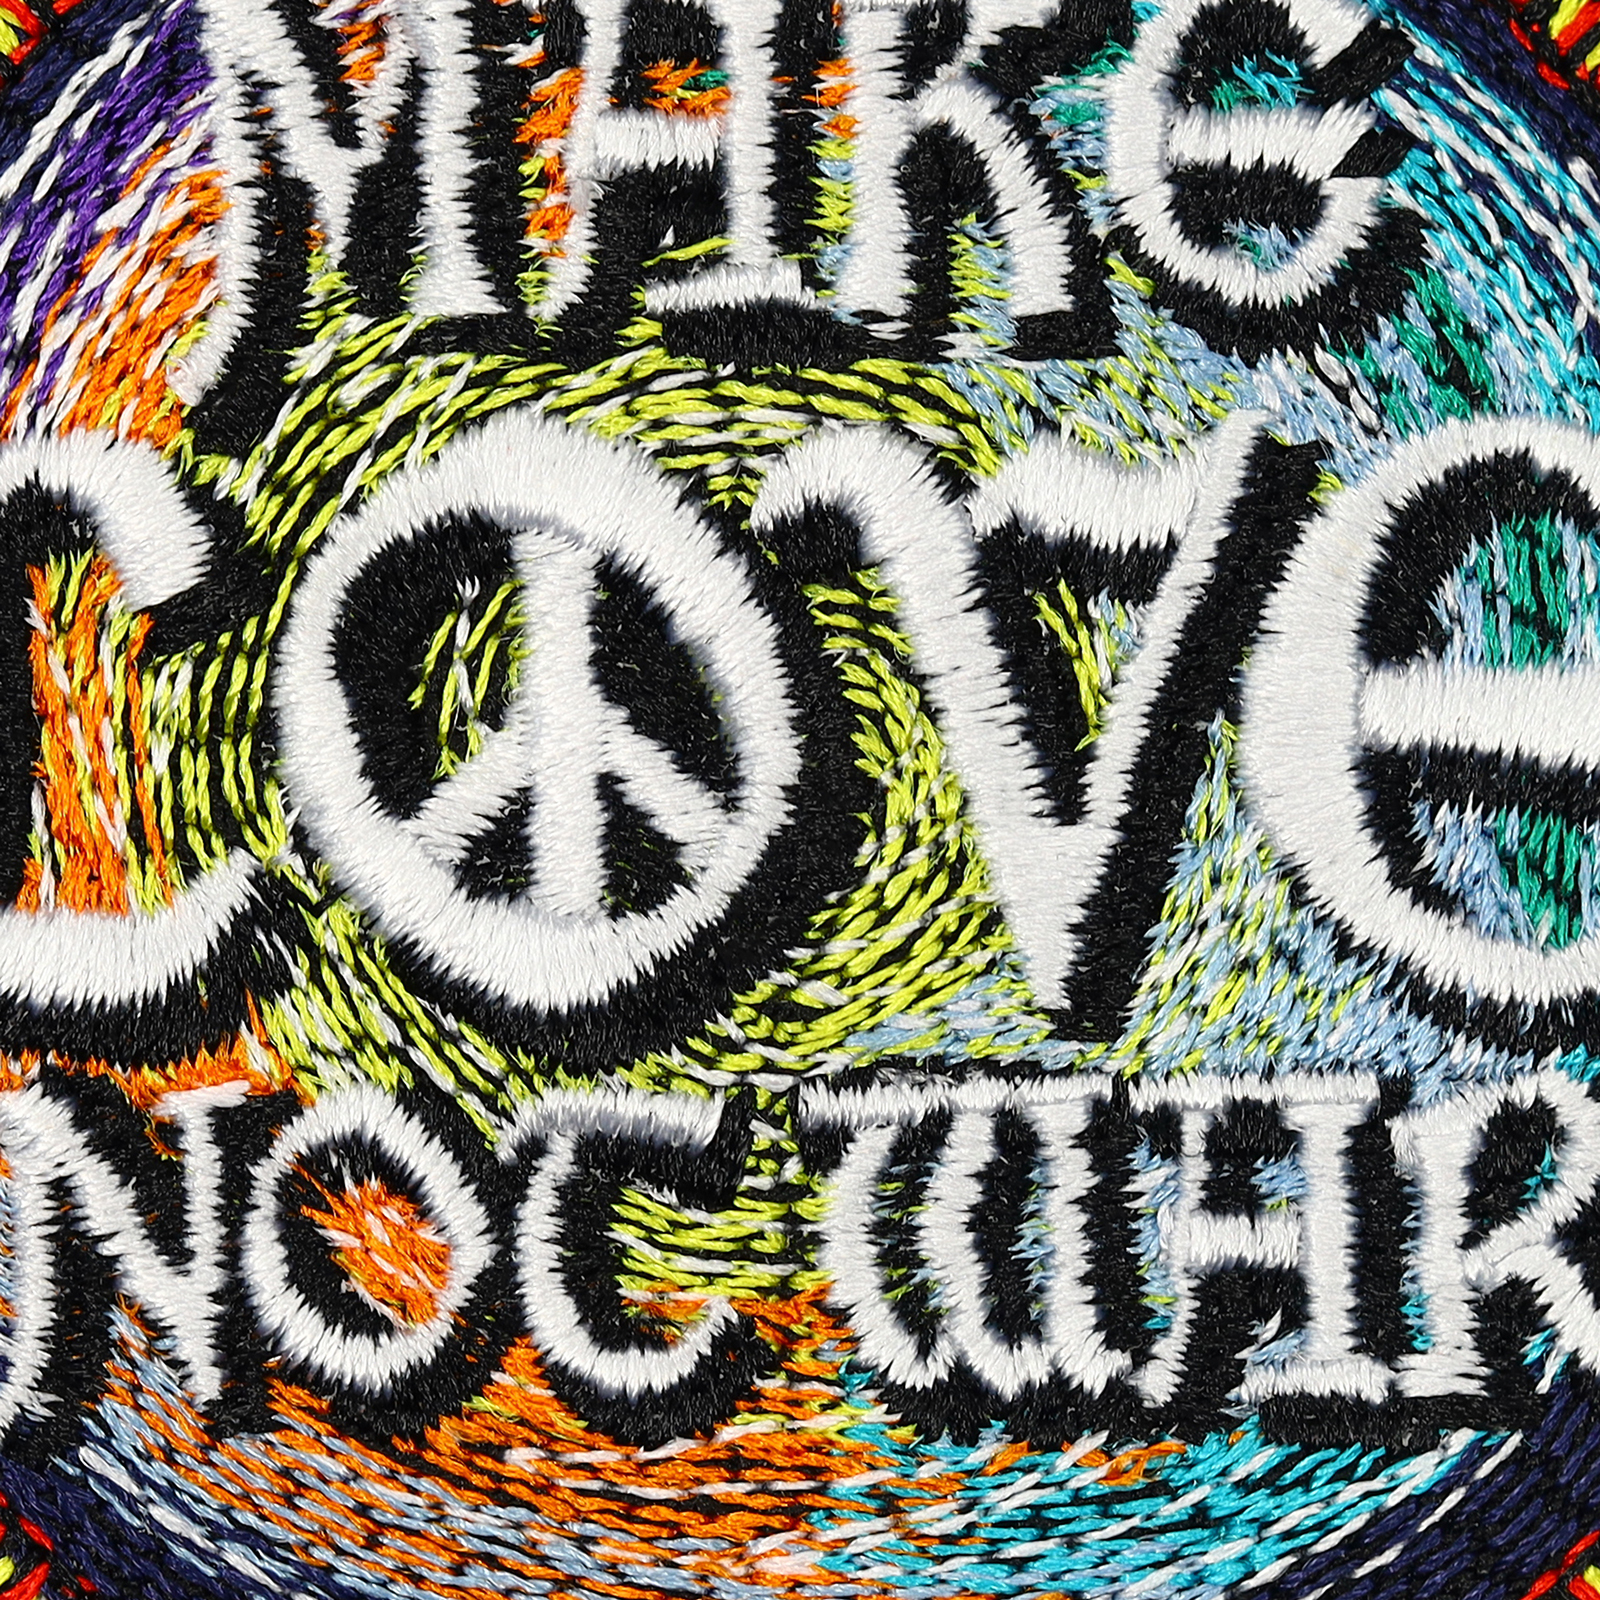 Make love not war - Patch